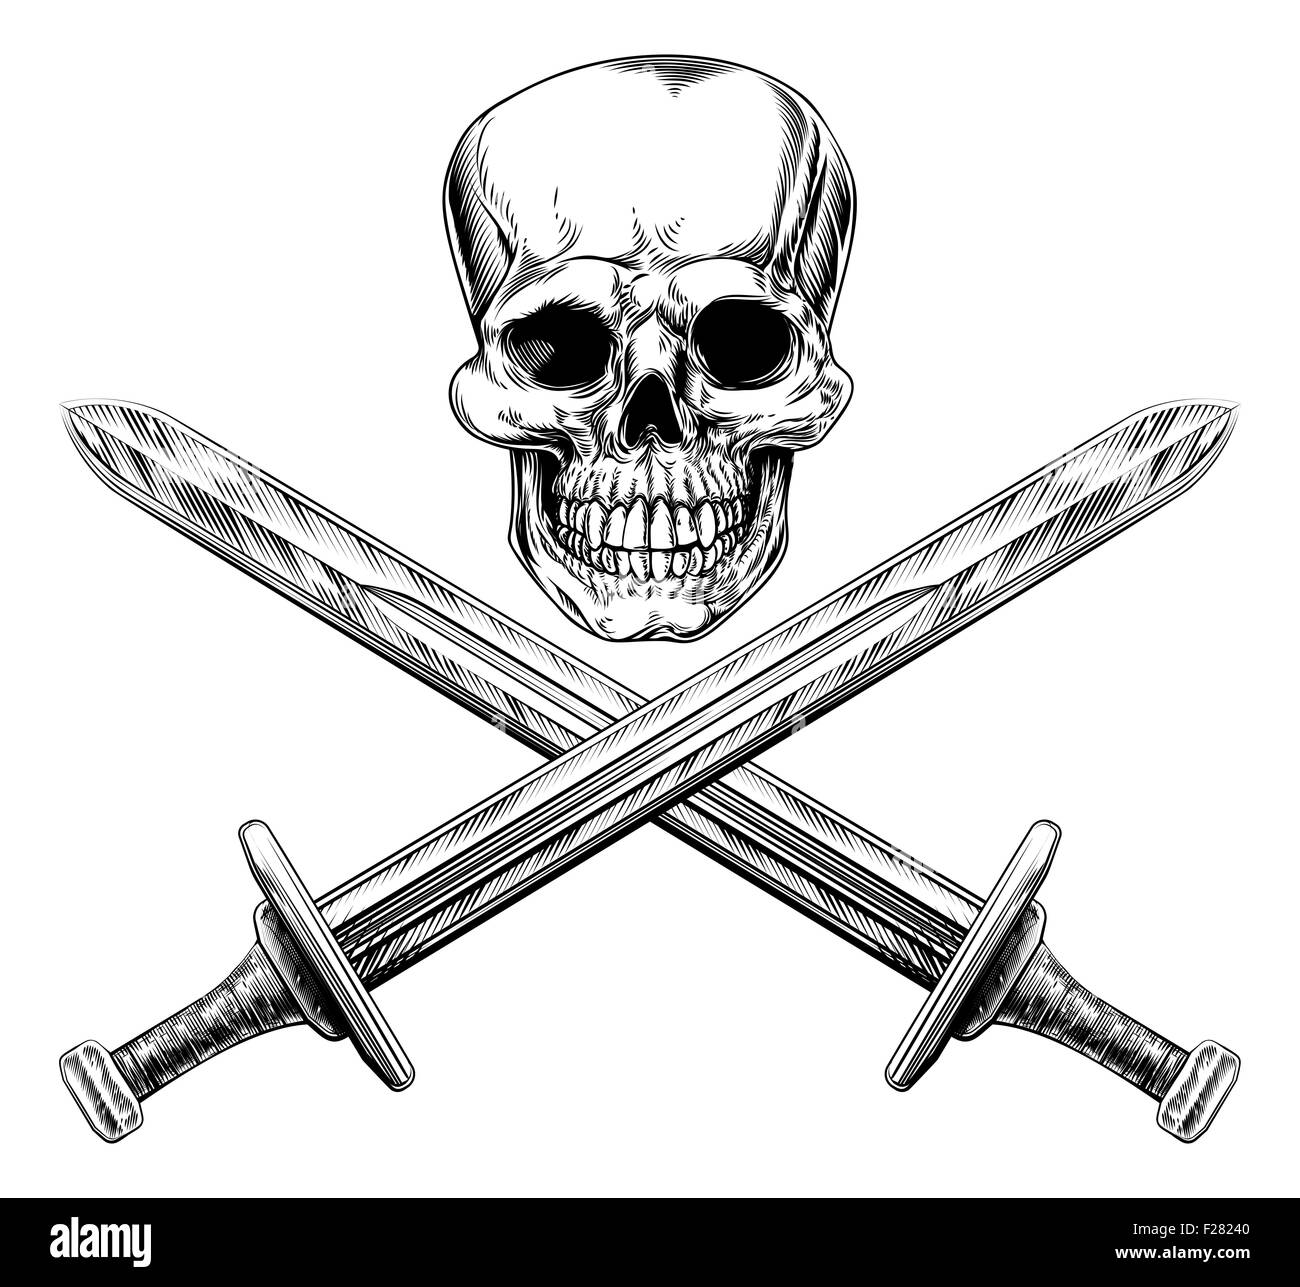 Un crâne humain et des épées croisées style pirate signe dans un style vintage sur bois Banque D'Images